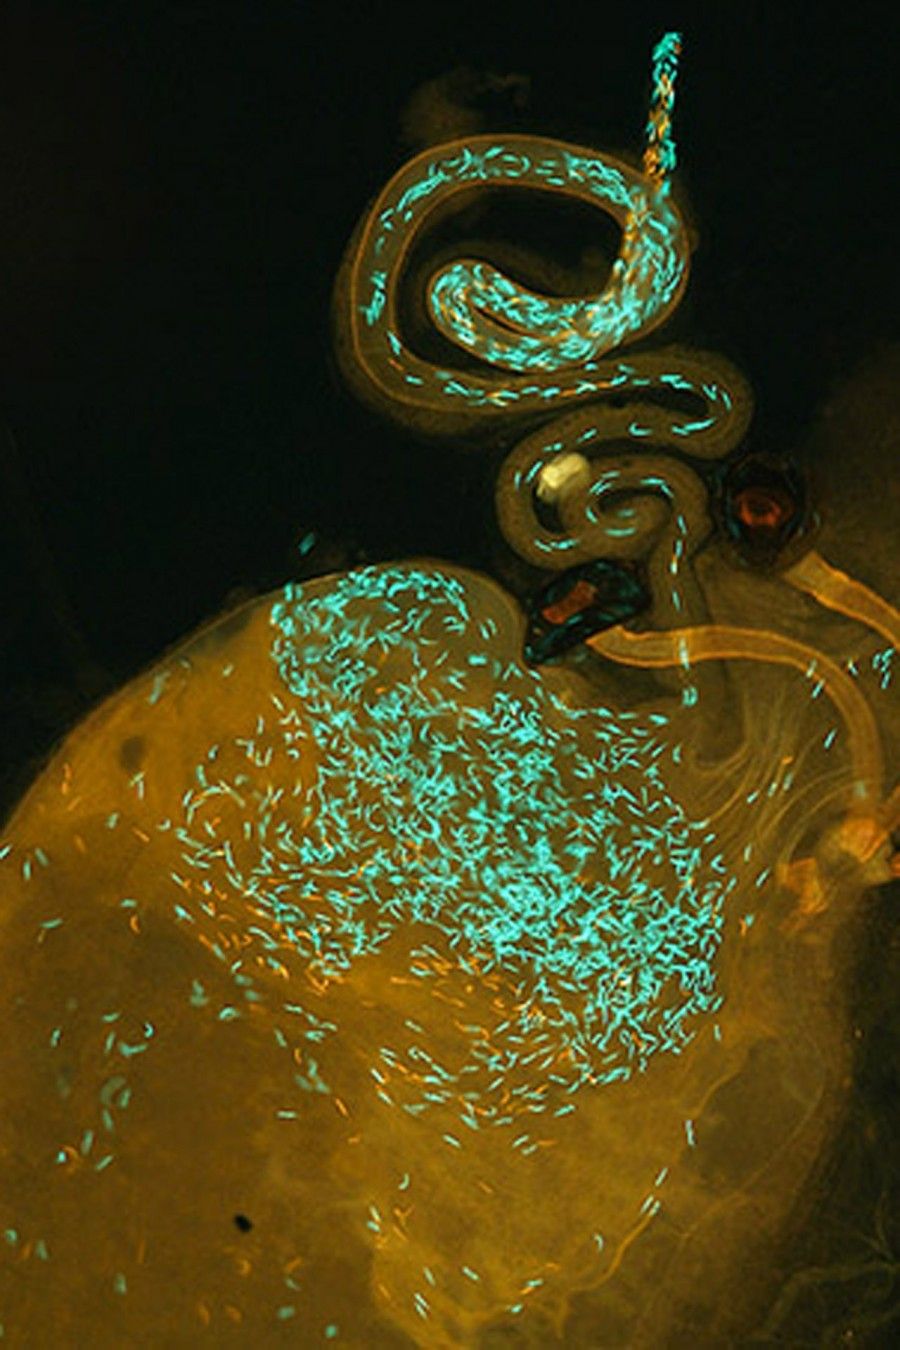 Drosophila simulans türüne ait bir dişinin üreme kanalı. Bu dişi, iki farklı türün erkeği tarafından döllenmiştir: Kırmızı sperm başları Drosophila mauritiana türünün erkeğine, yeşil olanlarsa Drosophila simulans türünün erkeğine aittir.